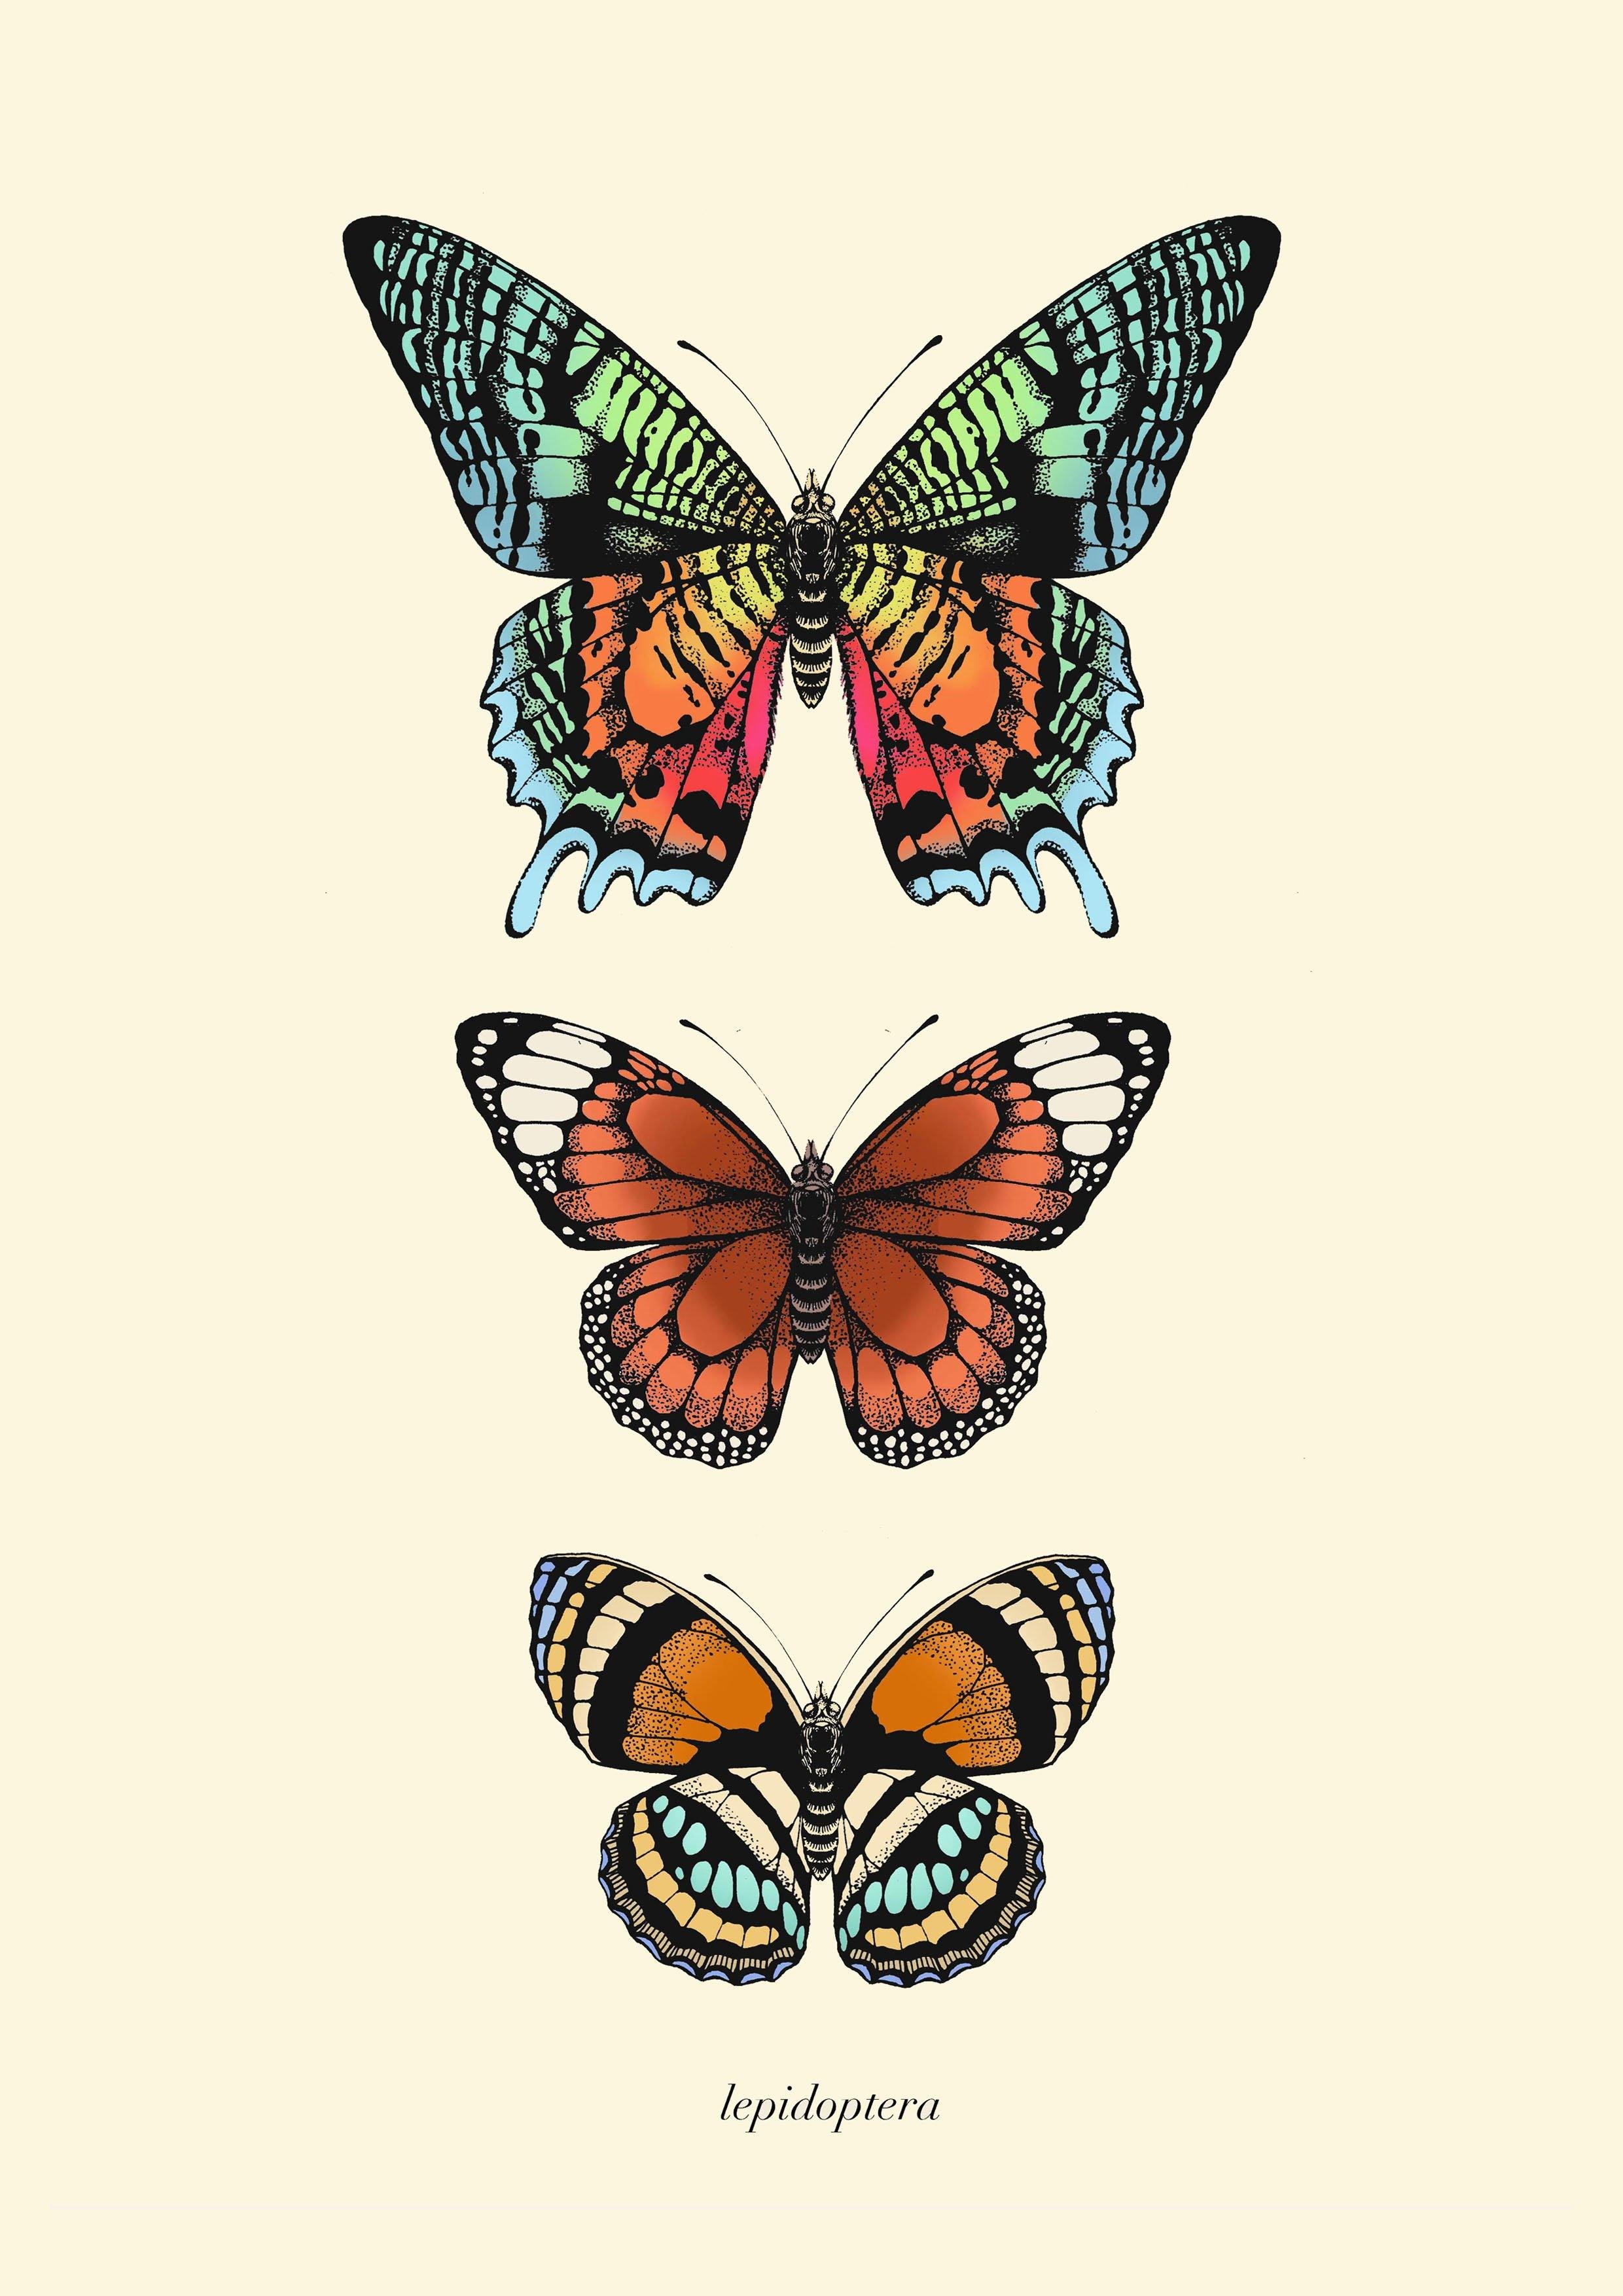 'Antique Tropical Butterflies I' Fine Art Print - Emily Carter London